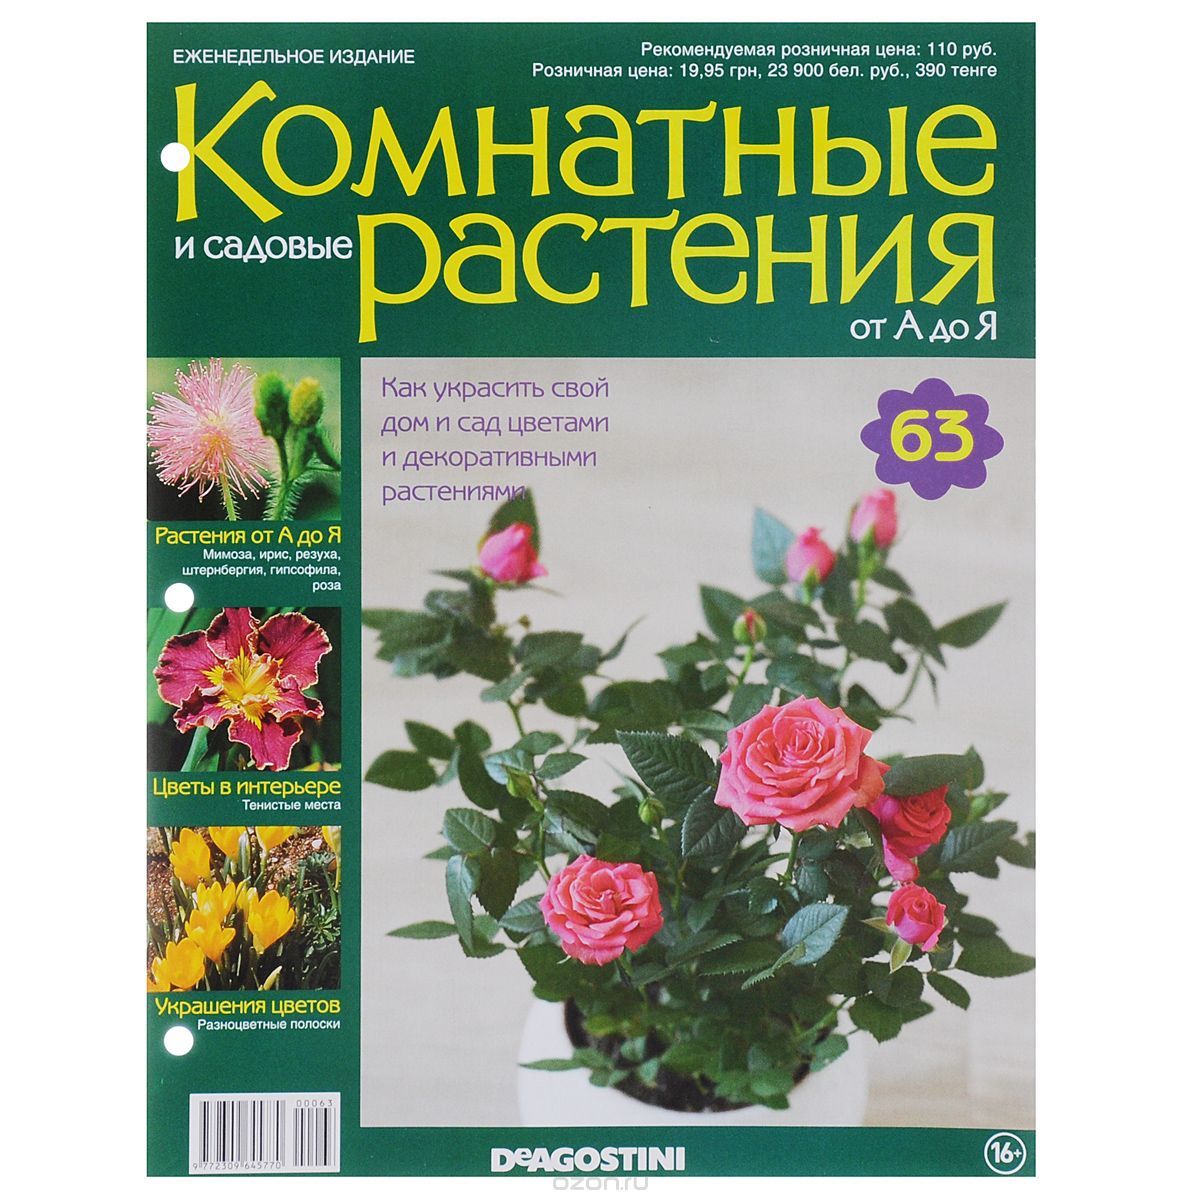 Журнал "Комнатные и садовые растения. От А до Я" №63